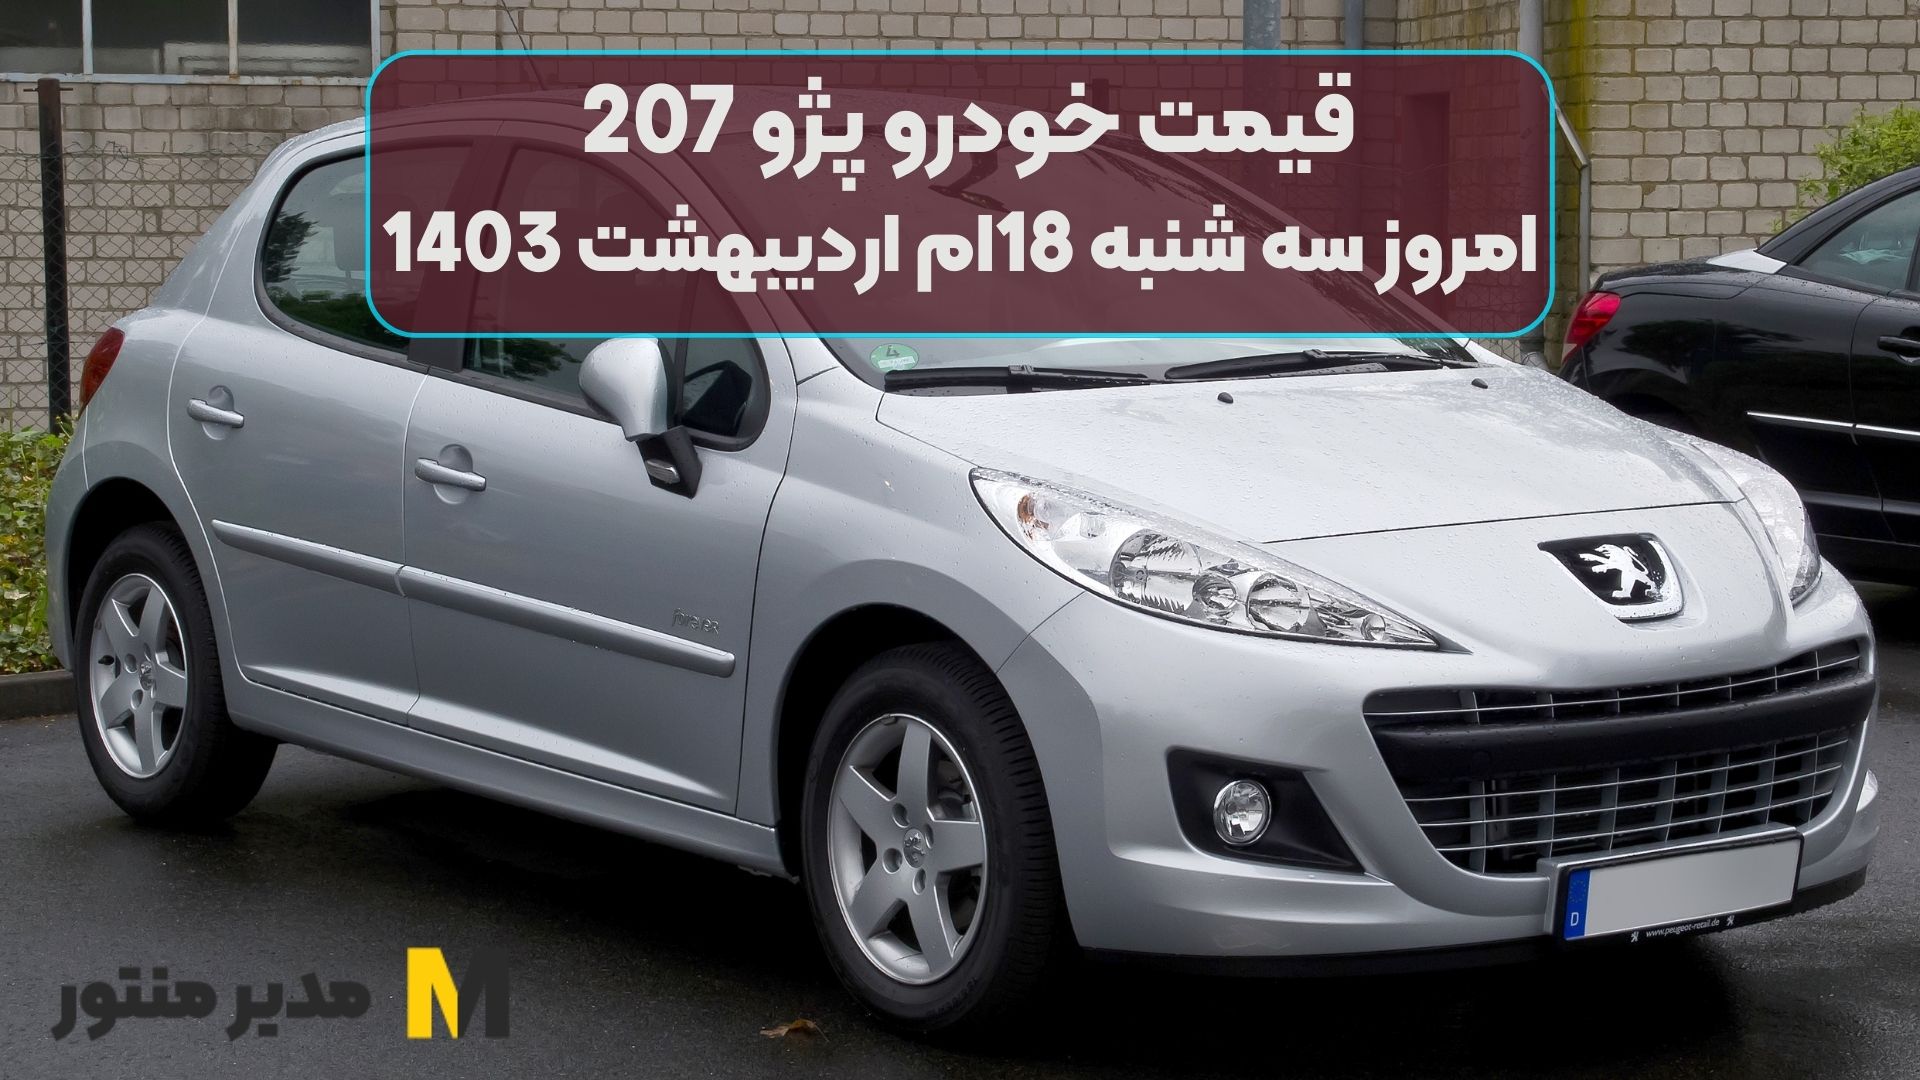 قیمت خودرو پژو 207 امروز سه شنبه 18ام اردیبهشت 1403